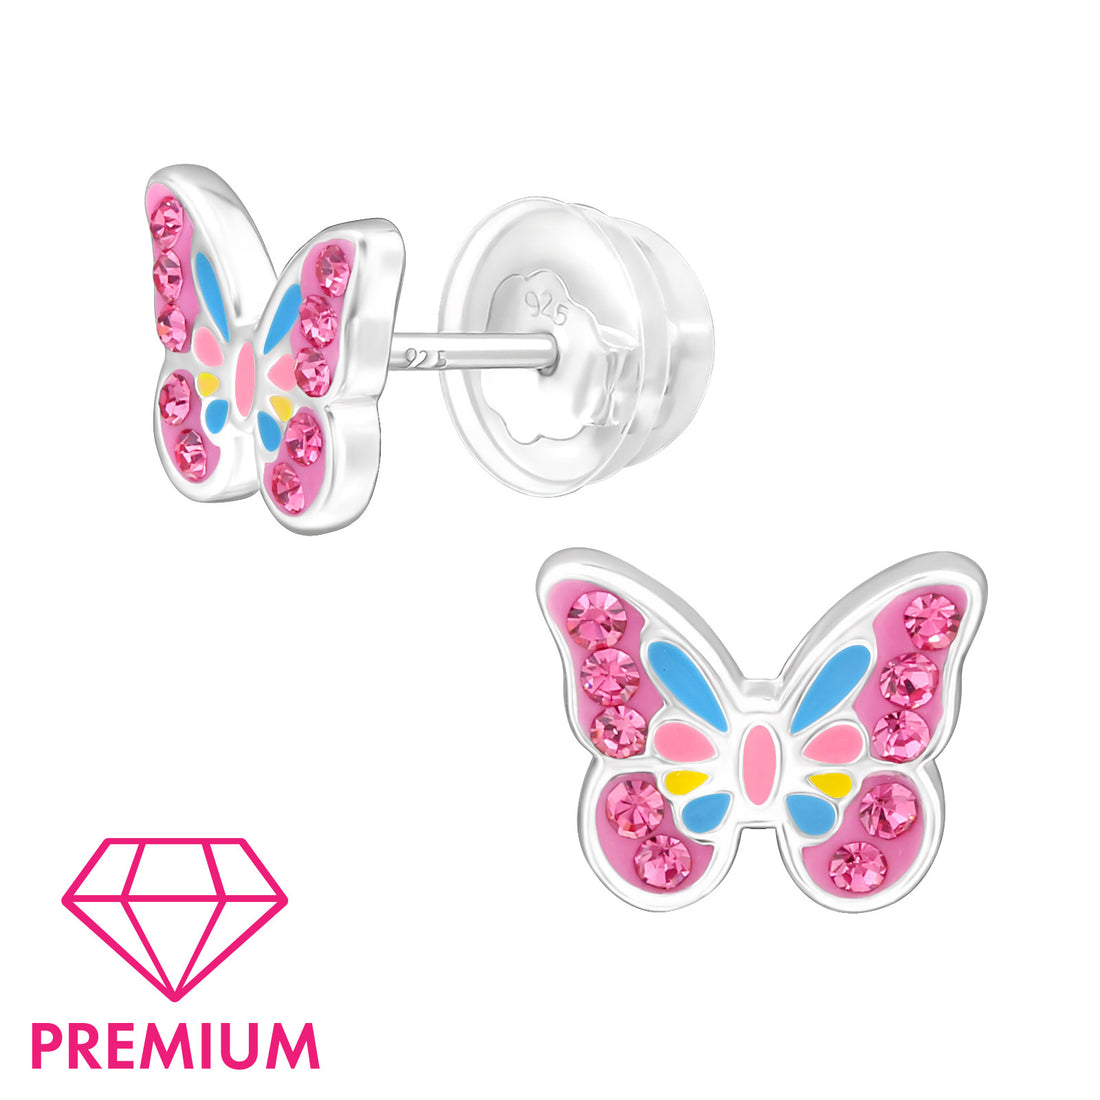 Zilveren kinderoorbellen Premium: Roze vlinder